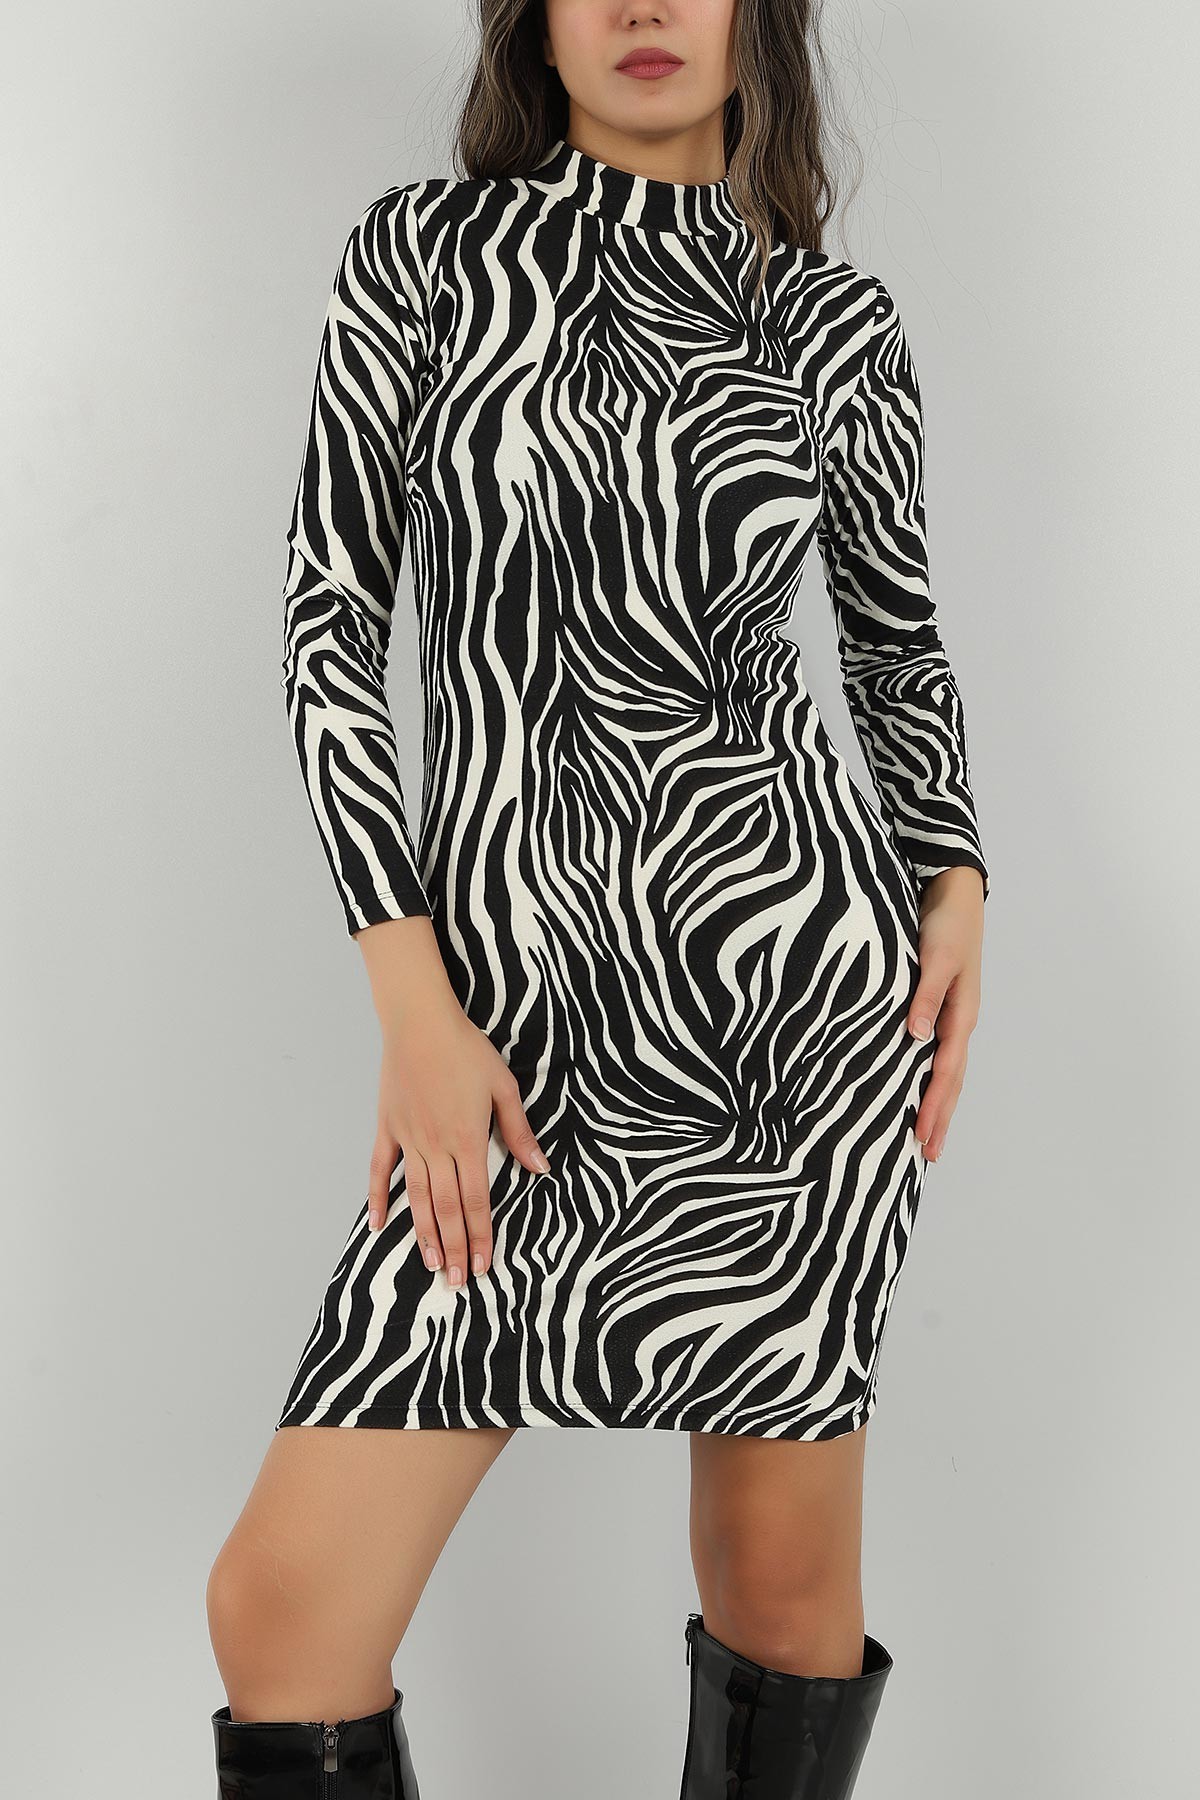 Zebra Desenli Pamuk Dokulu Süet Elbise 147061